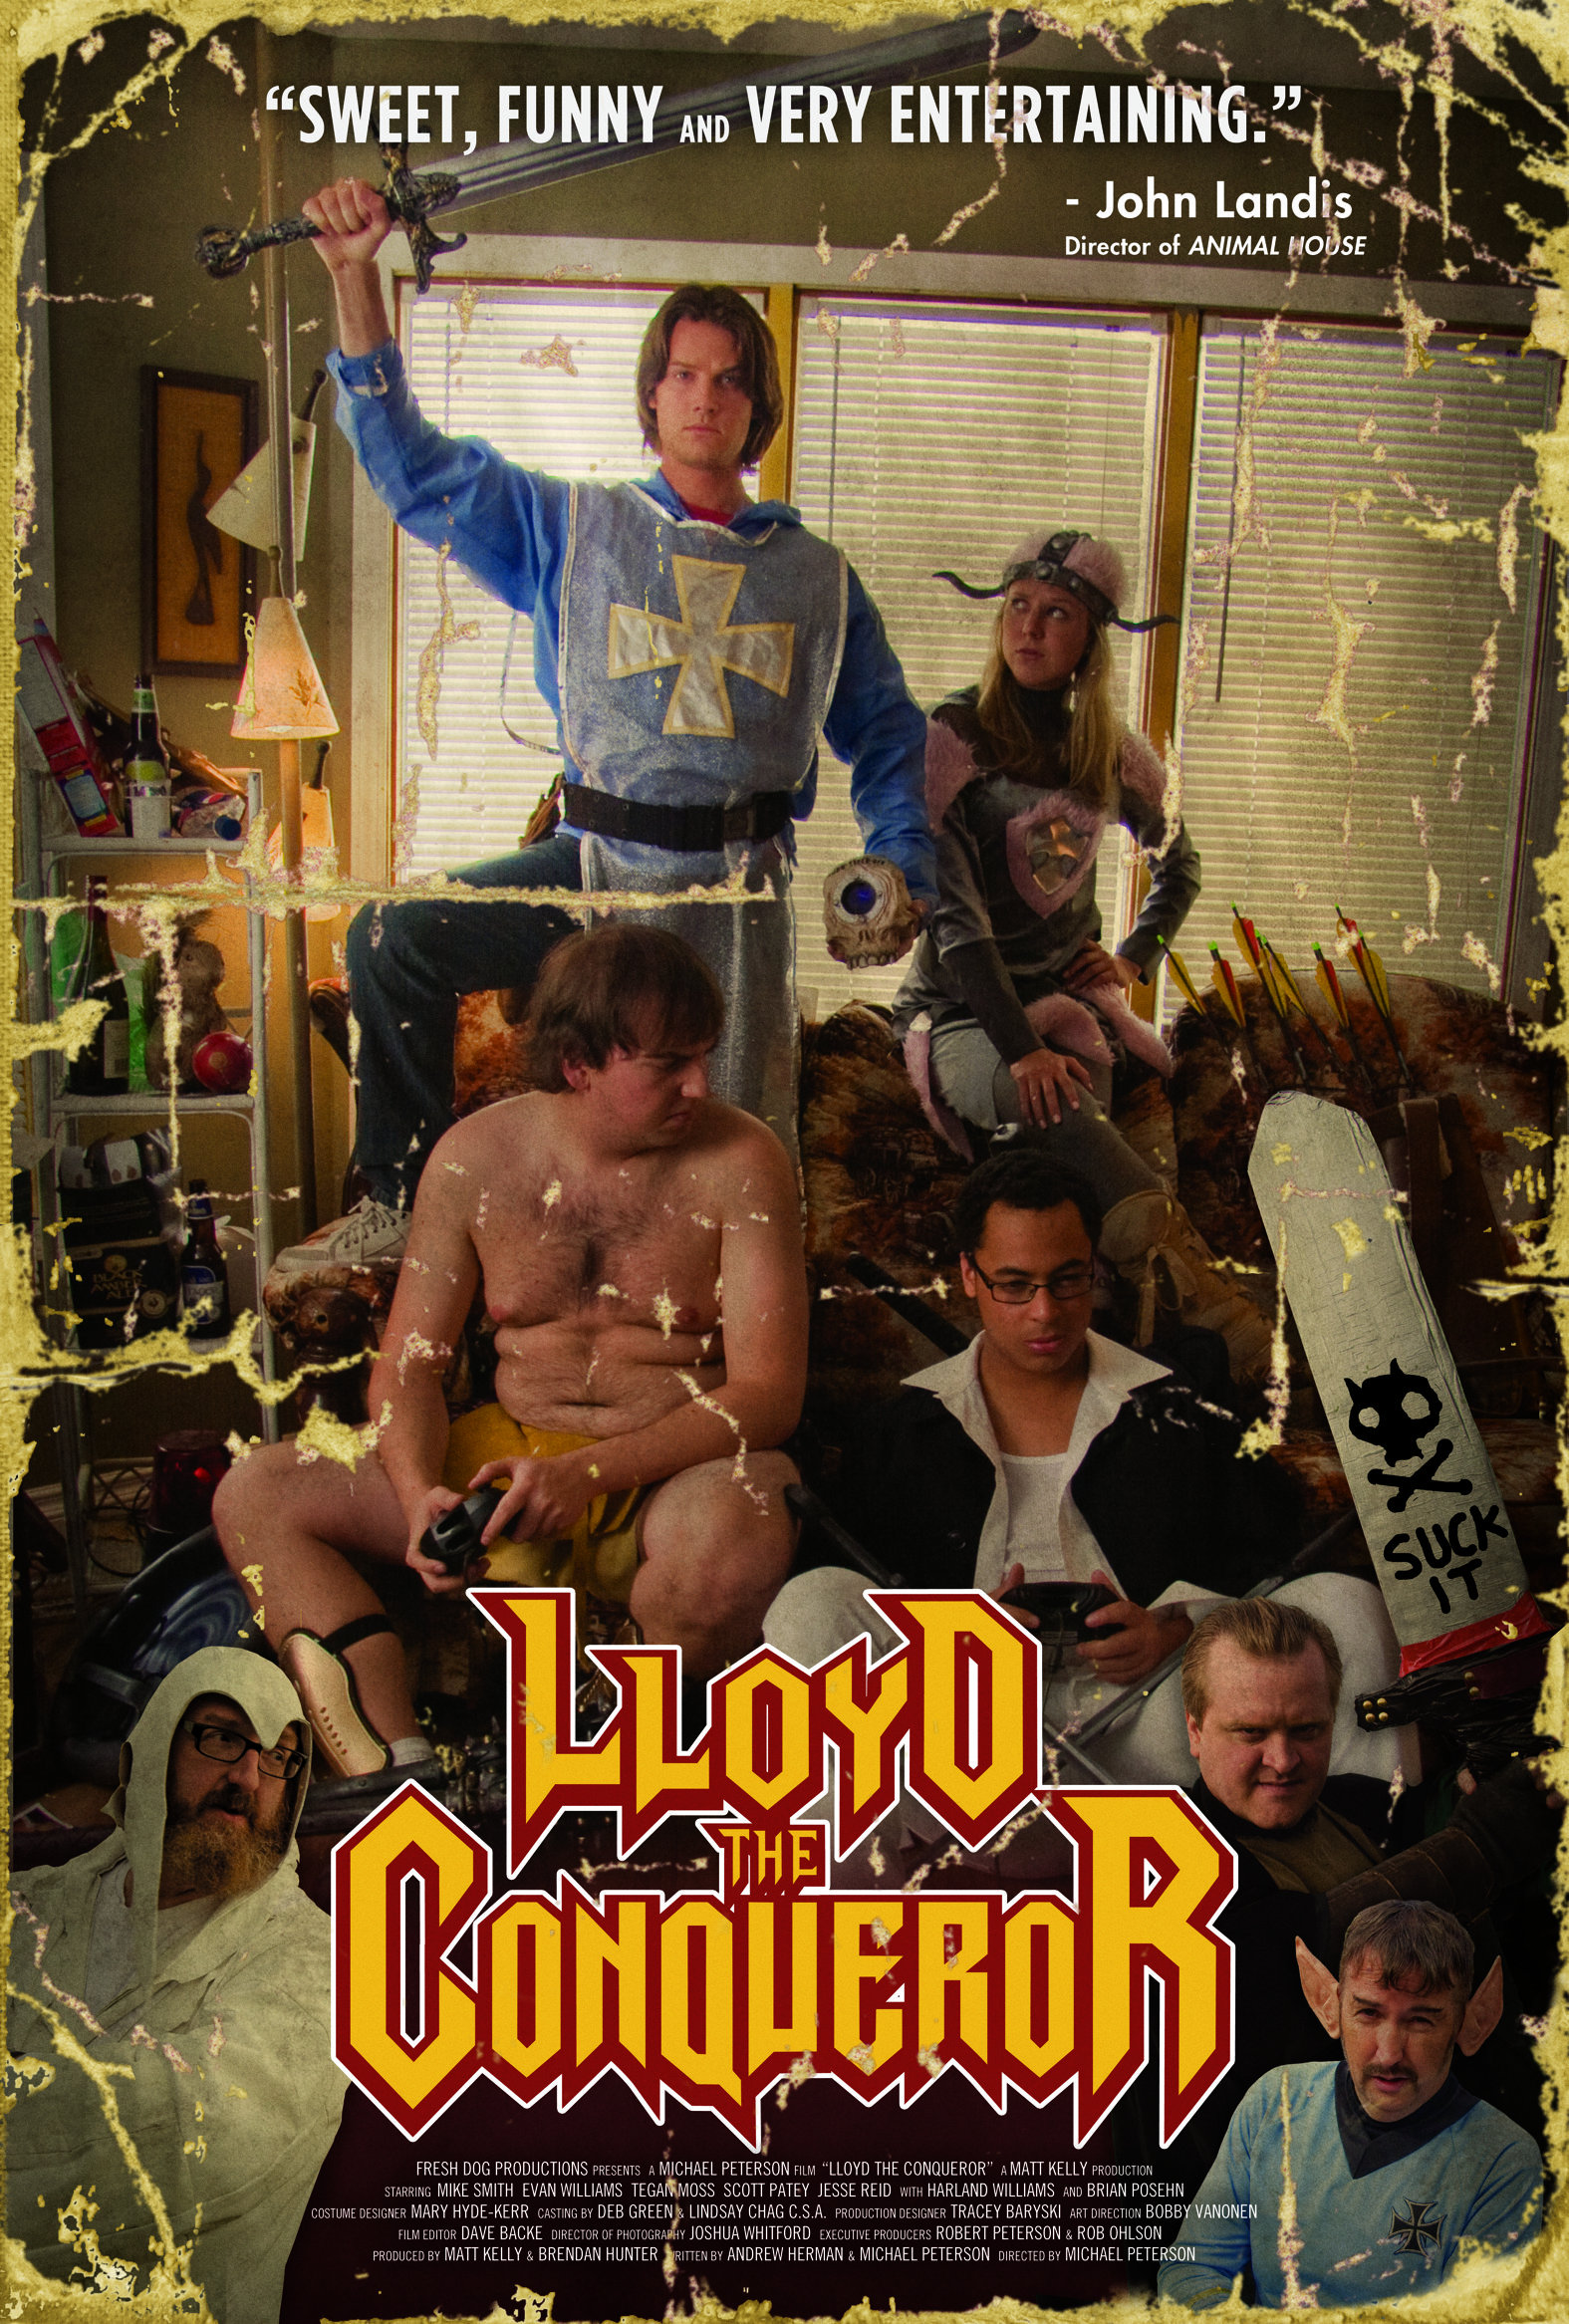 Lloyd the Conqueror (2011) Screenshot 2